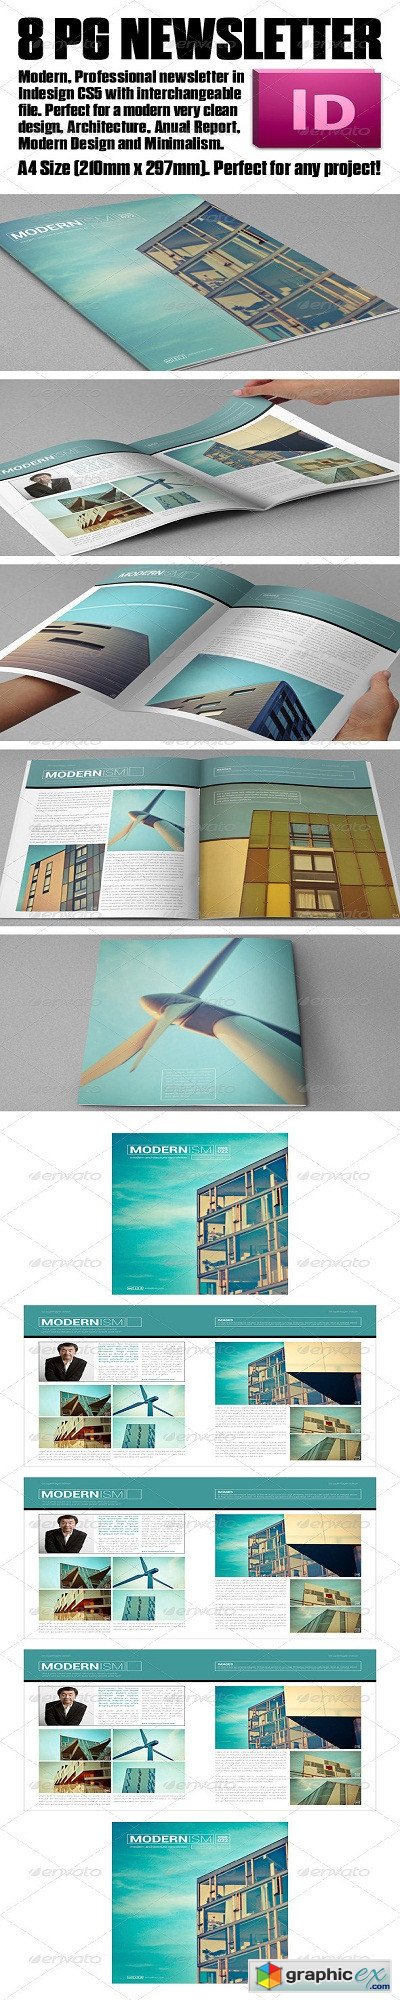 Modern Architecture Newsletter